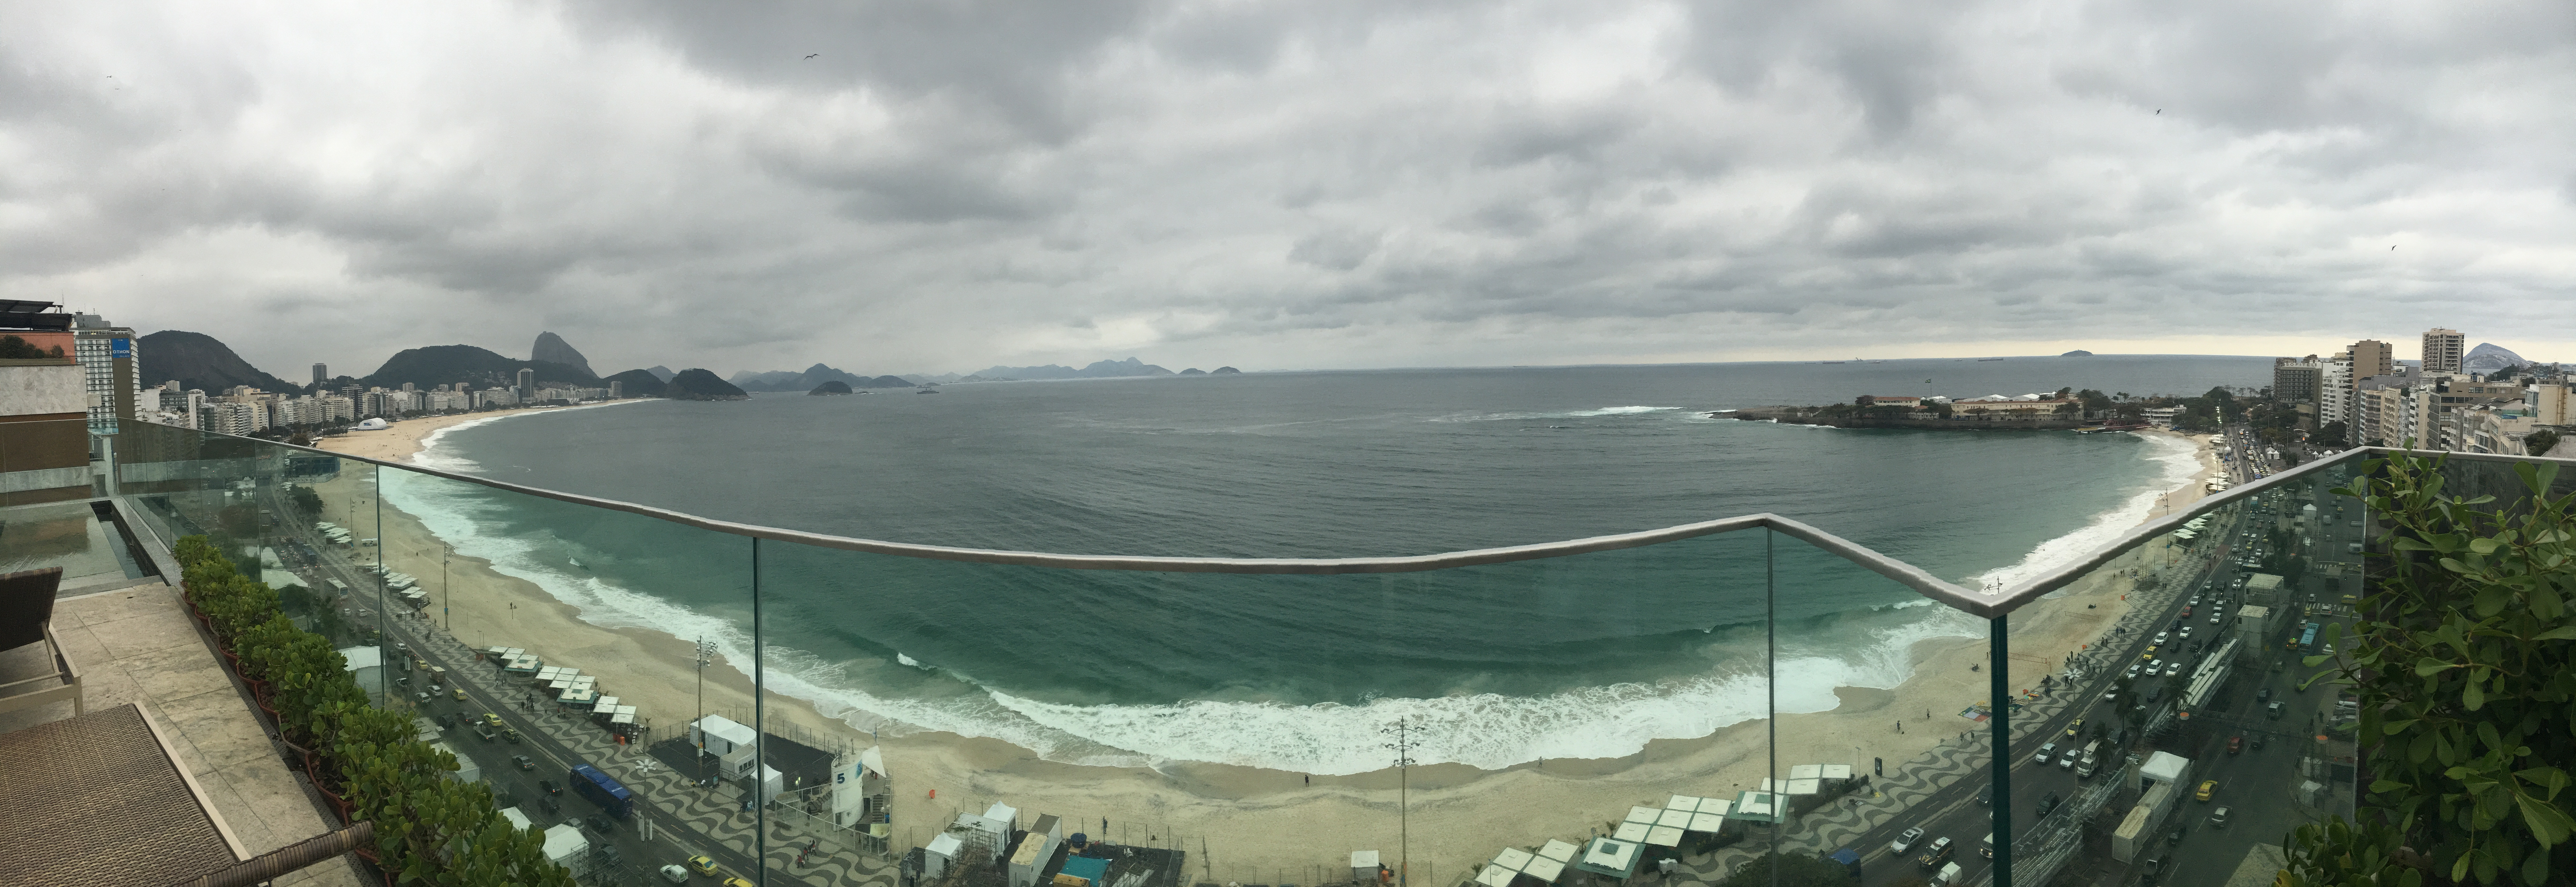 Rio with panorama